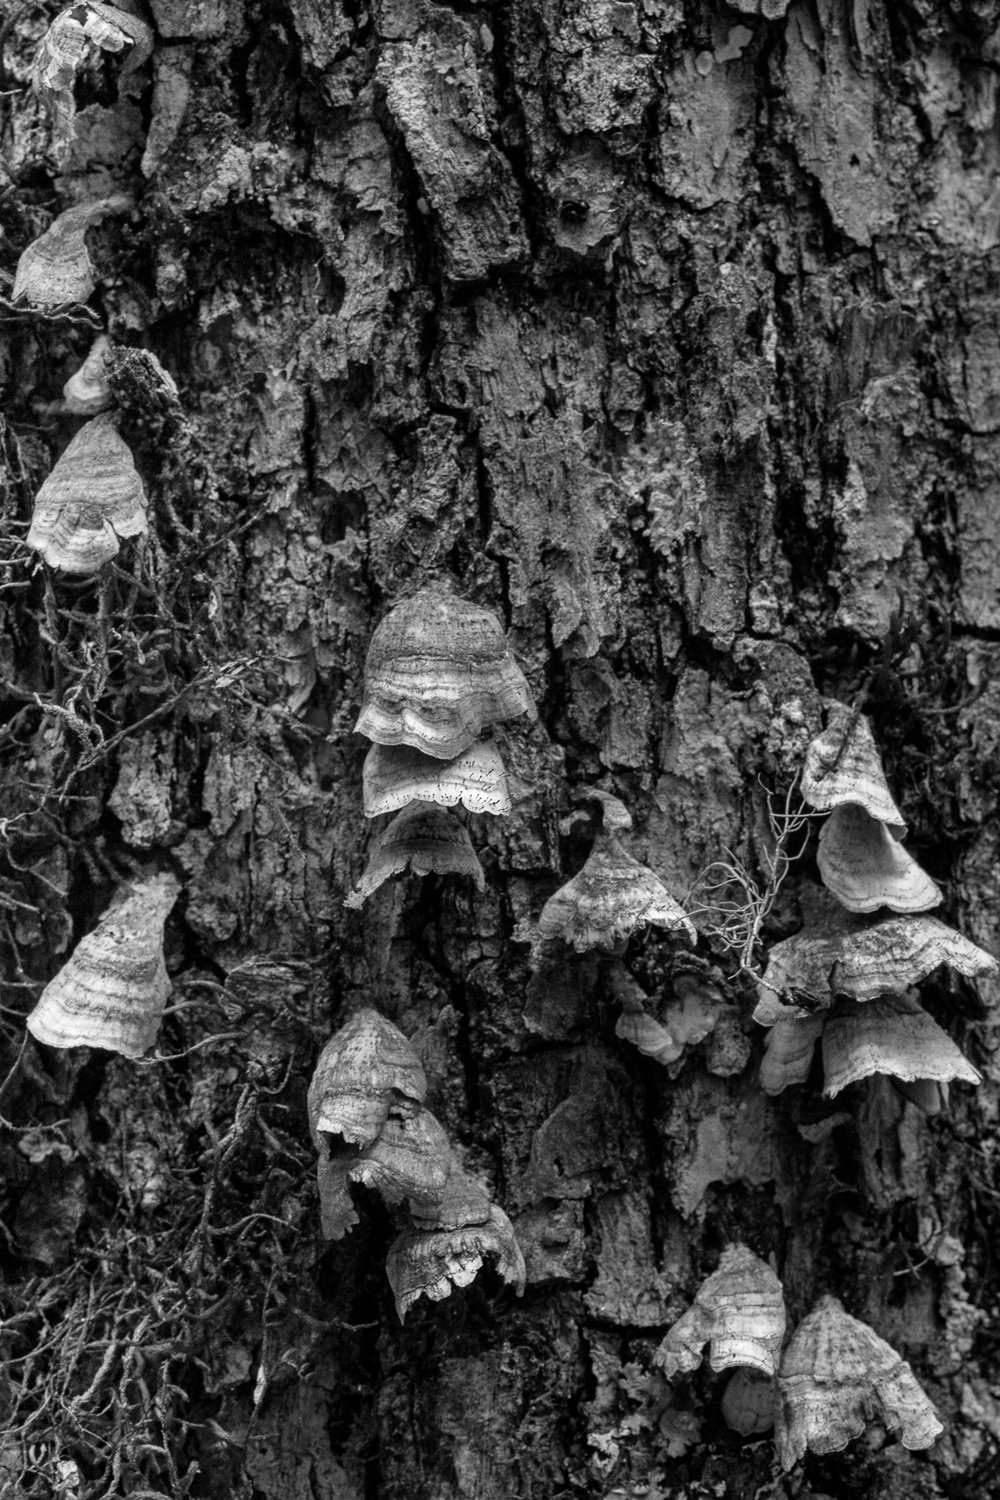 Turkey Tail Fungi on Tree Bark.jpg